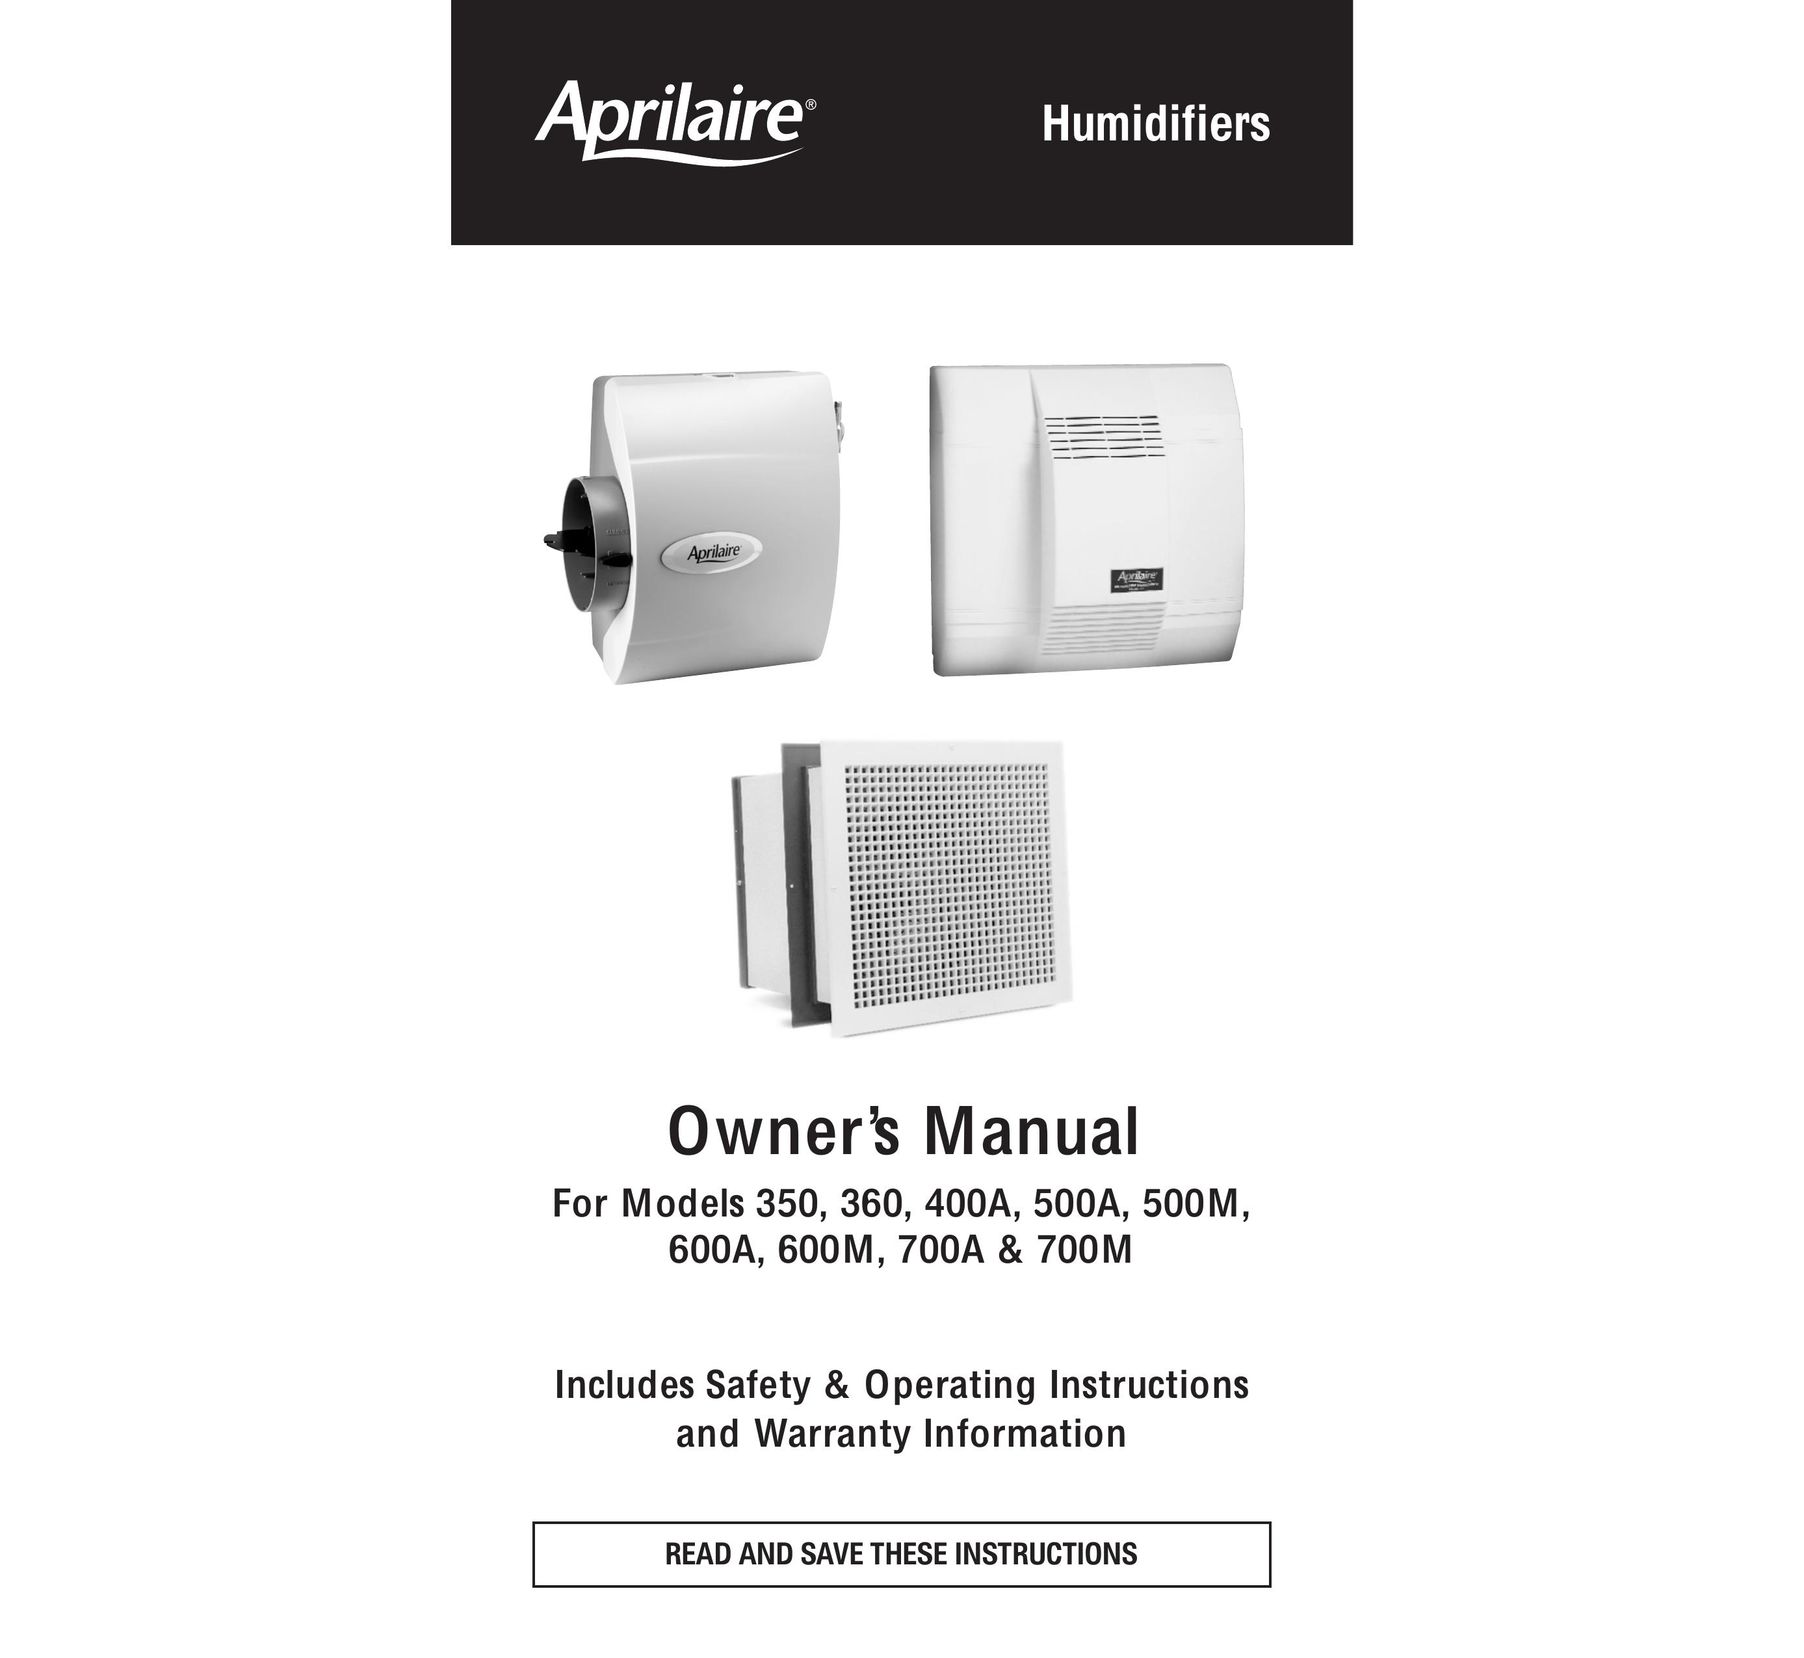 Aprilaire 400A Dehumidifier User Manual